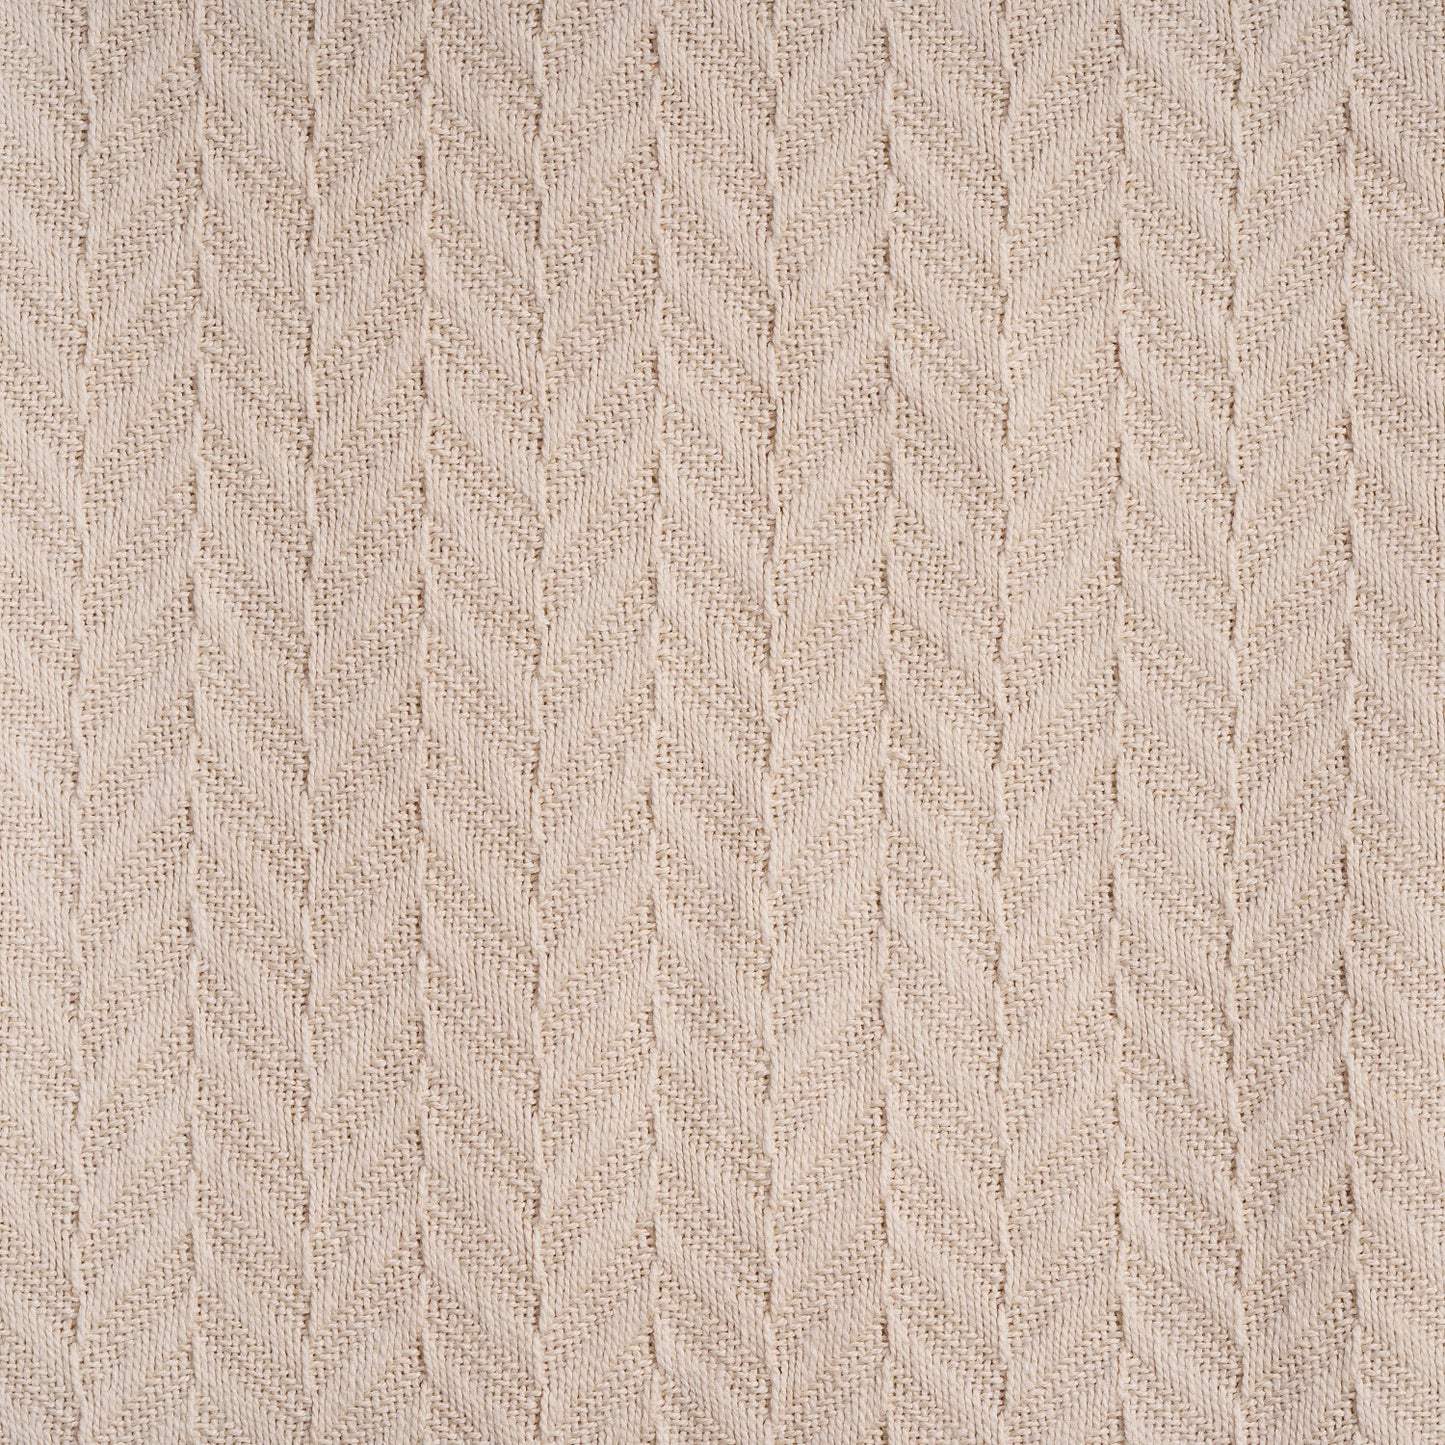 herringbone weave blanket